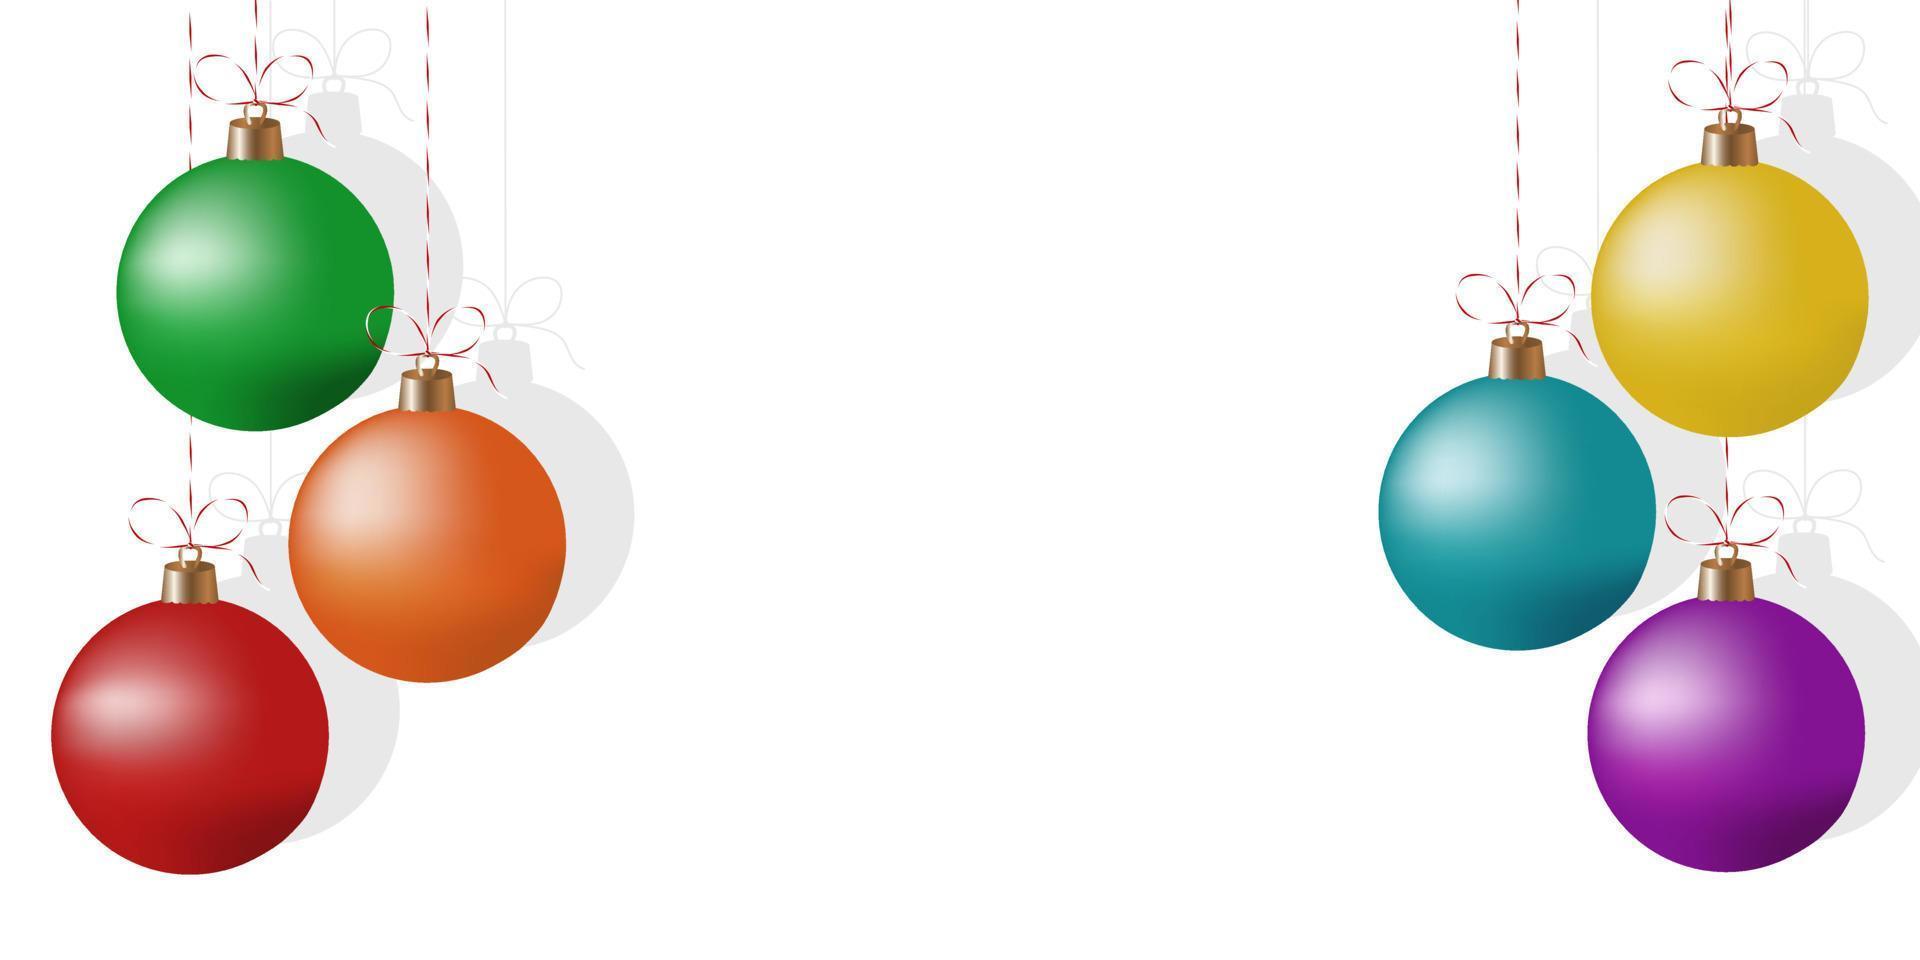 coloridas bolas de árbol de navidad realistas sobre fondo blanco. fondo de año nuevo o navidad con adornos navideños y espacio para texto. diseño de fondo moderno. vector